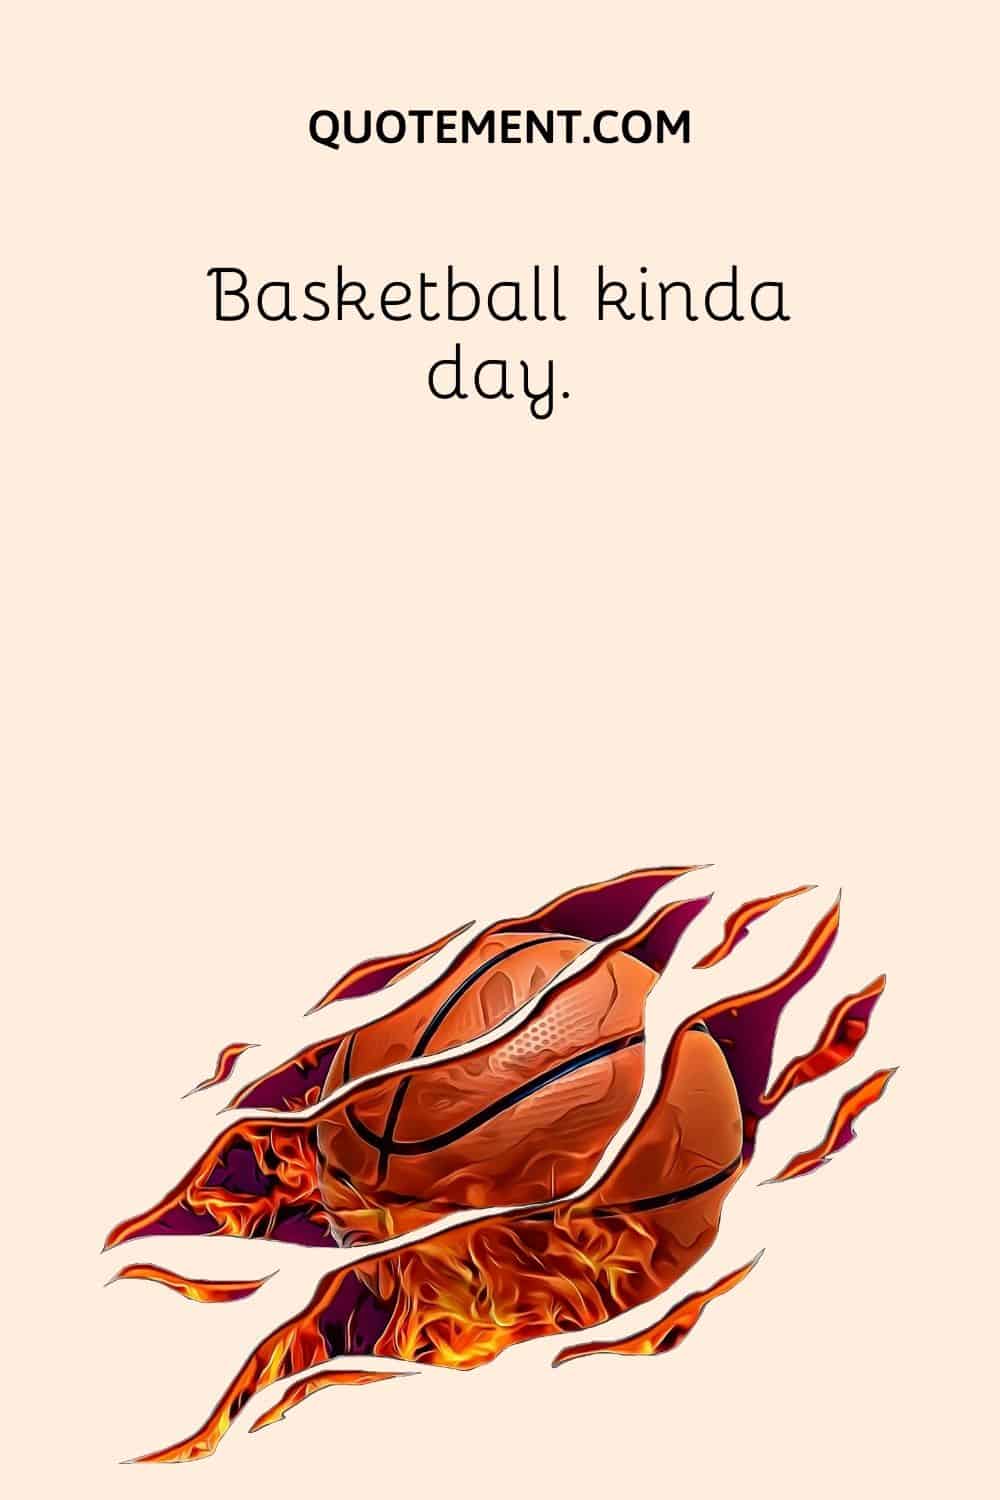 Basketball kinda day